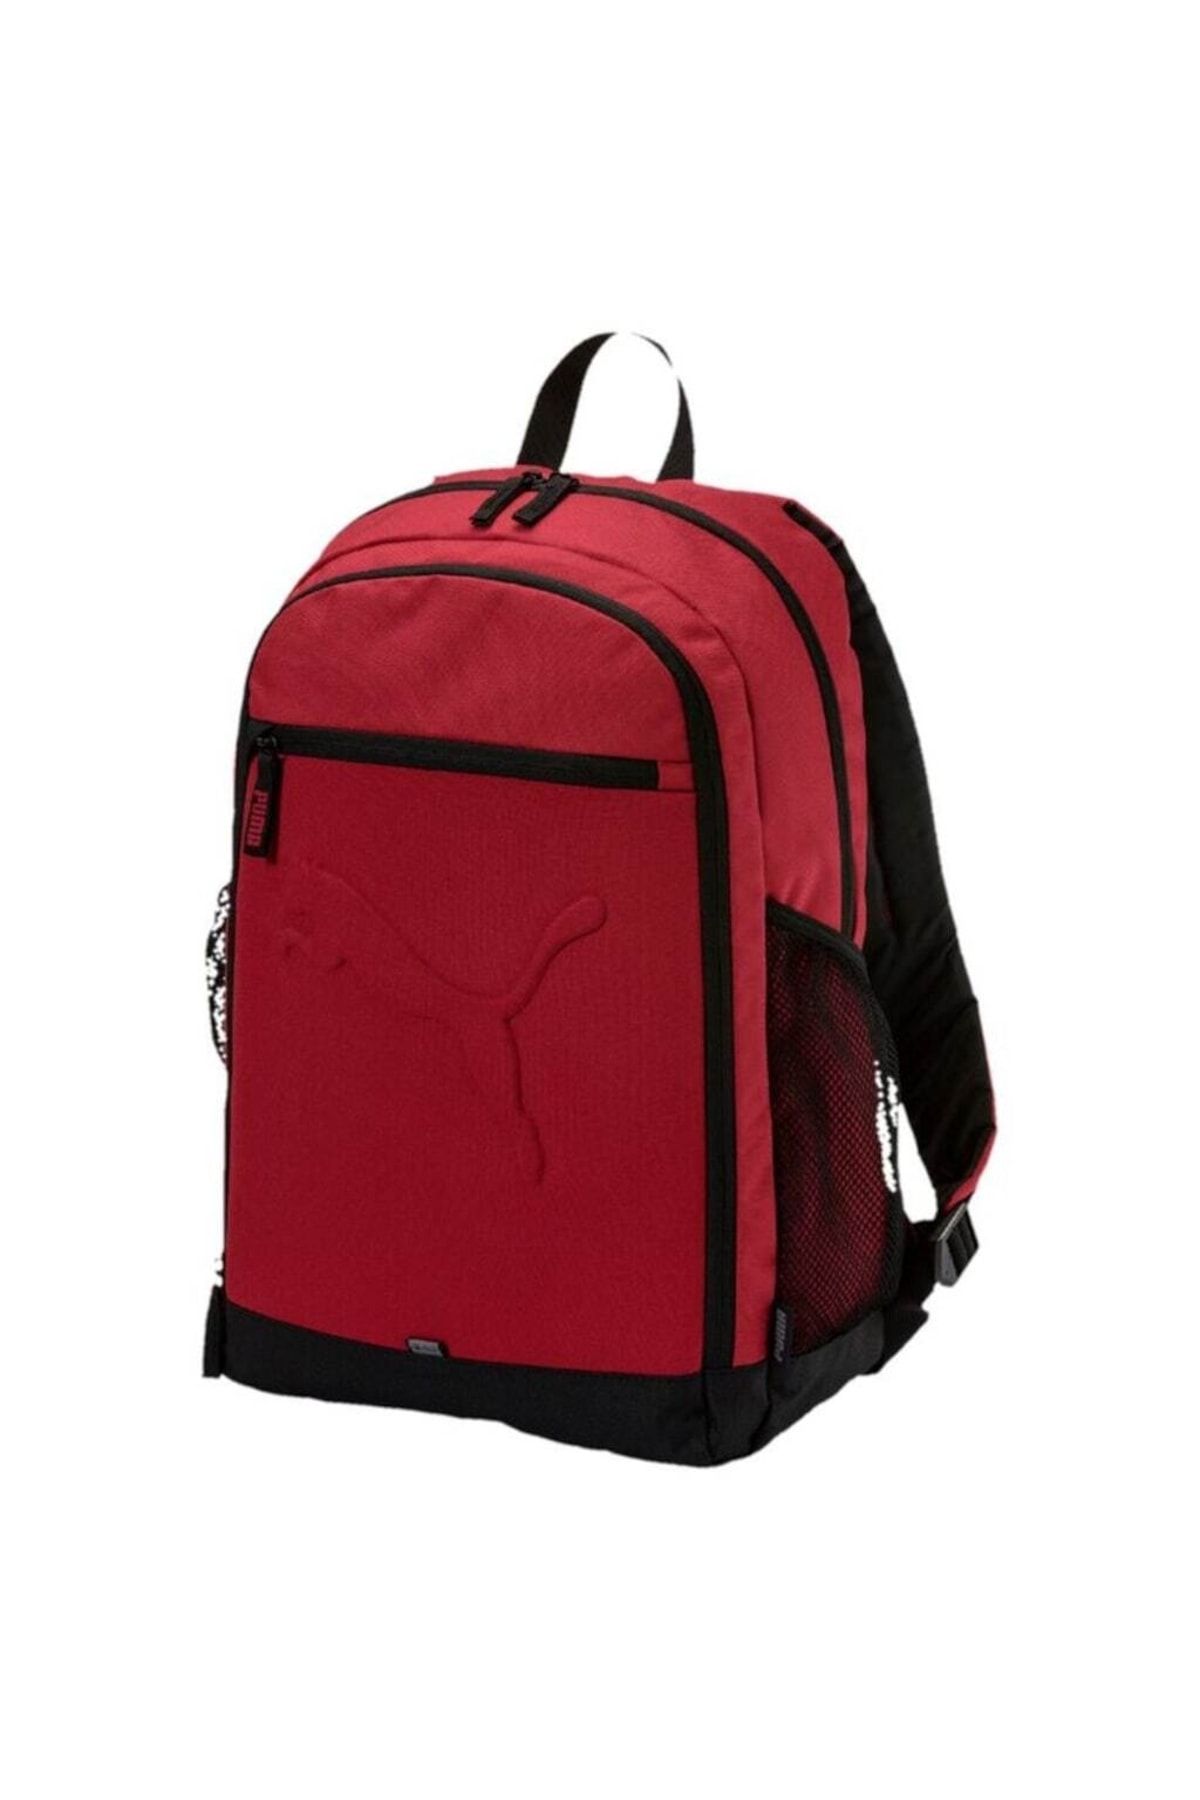 Puma Buuz Backpack